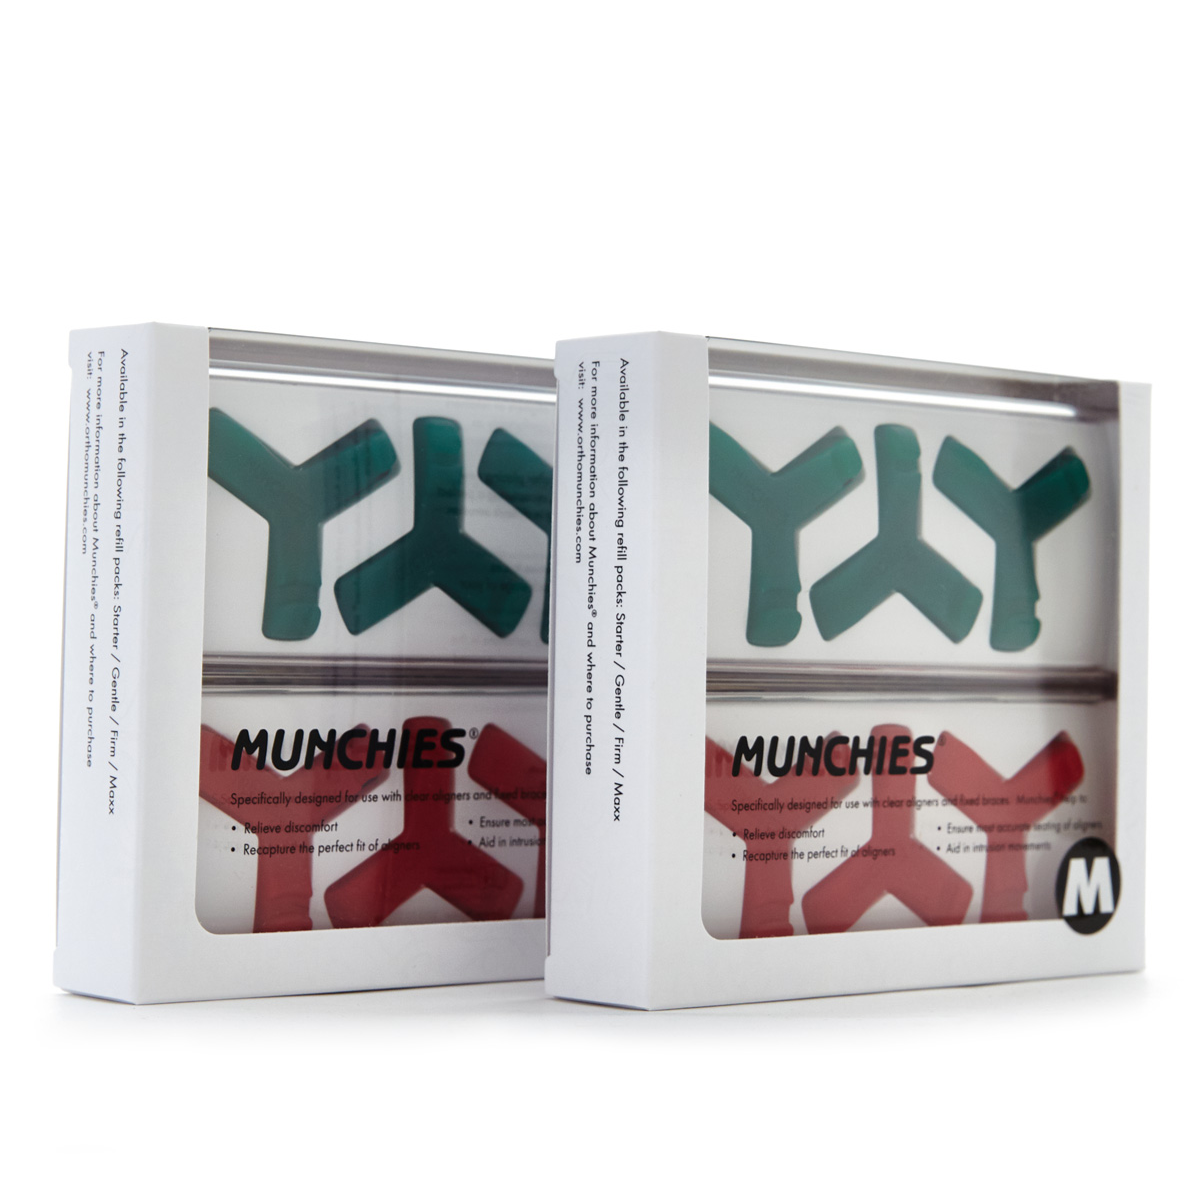 Munchies® Maxx Refill Pack